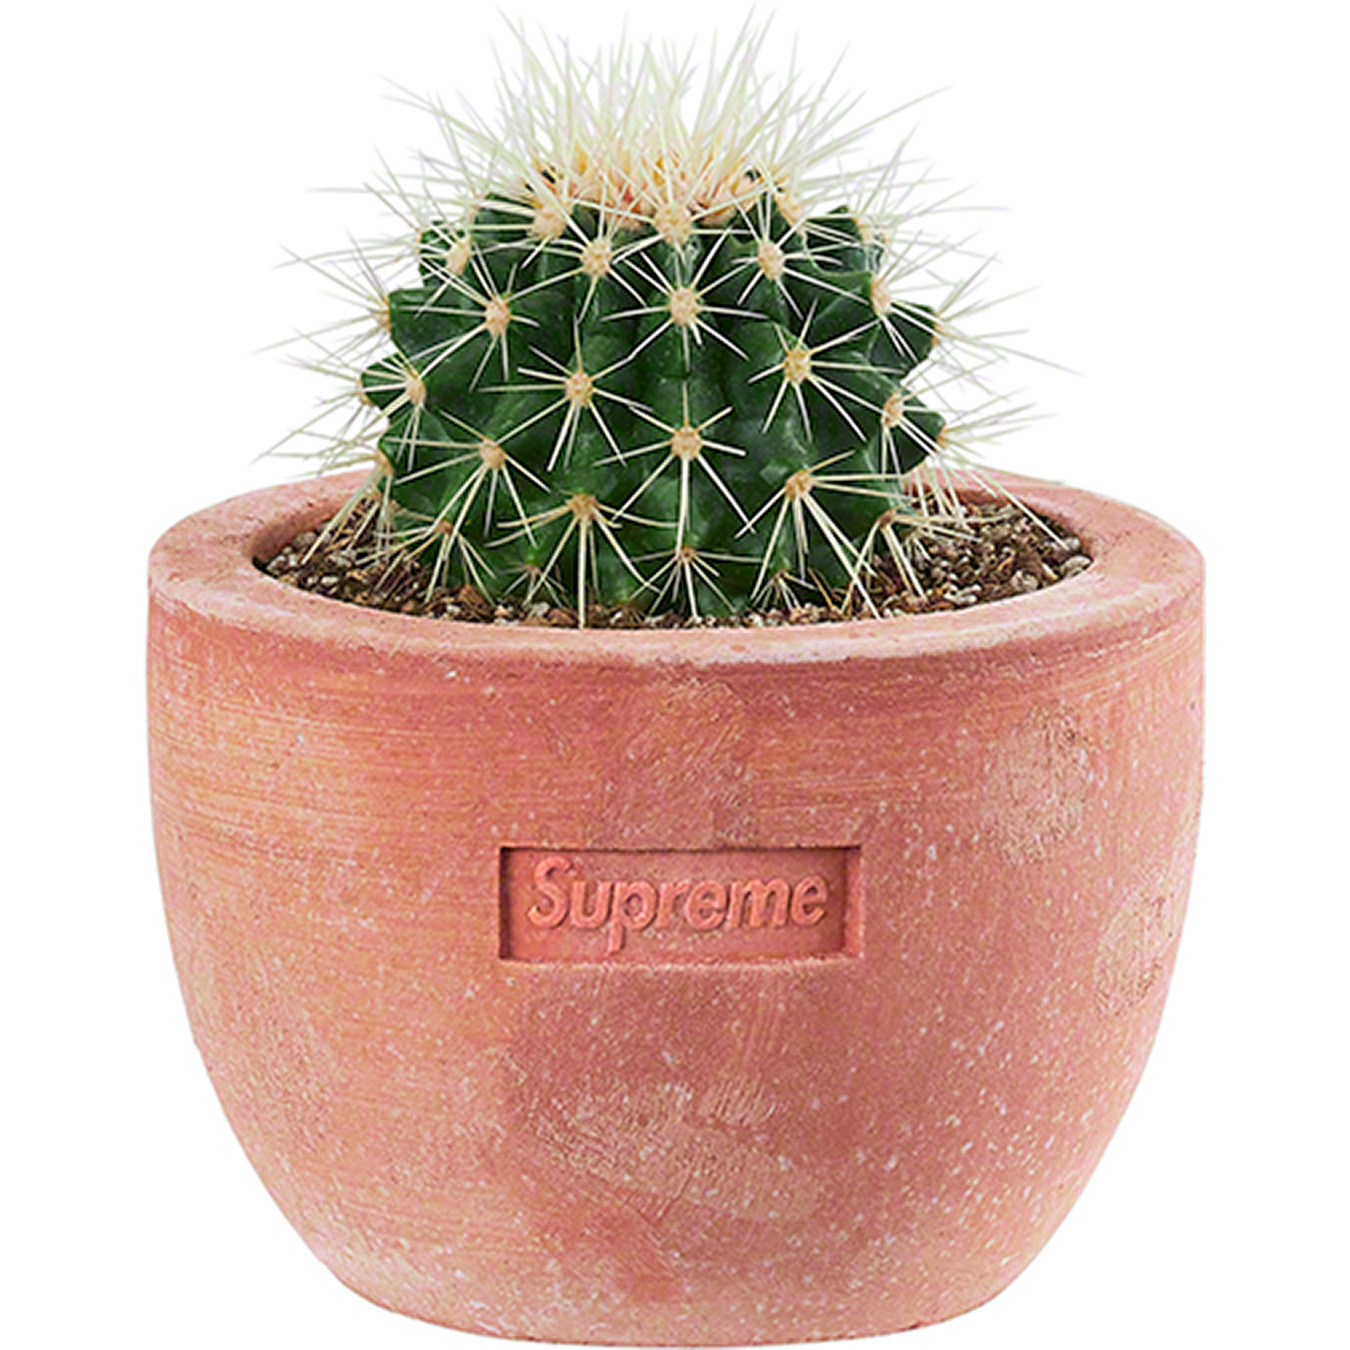 Supreme®/Poggi Ugo Planter | Supreme 22ss